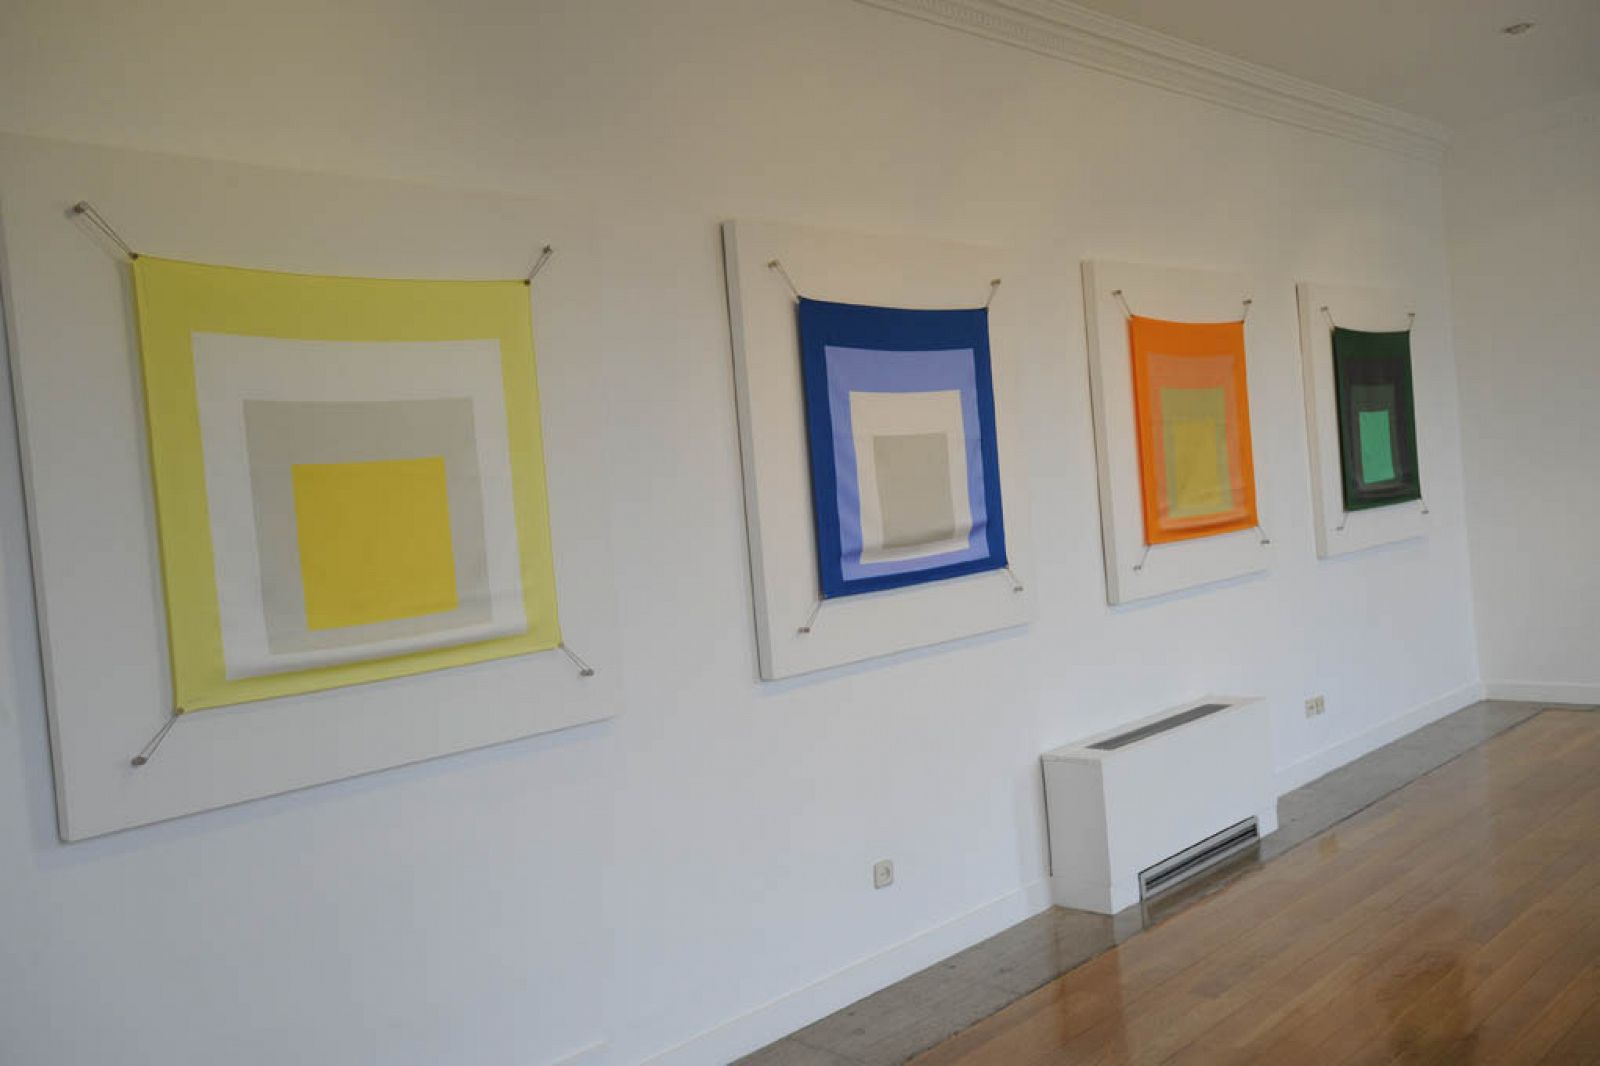 La colección de pañuelos inspirados en la obra de Josef Albers se ha exhibido en una galería de arte de Madrid.